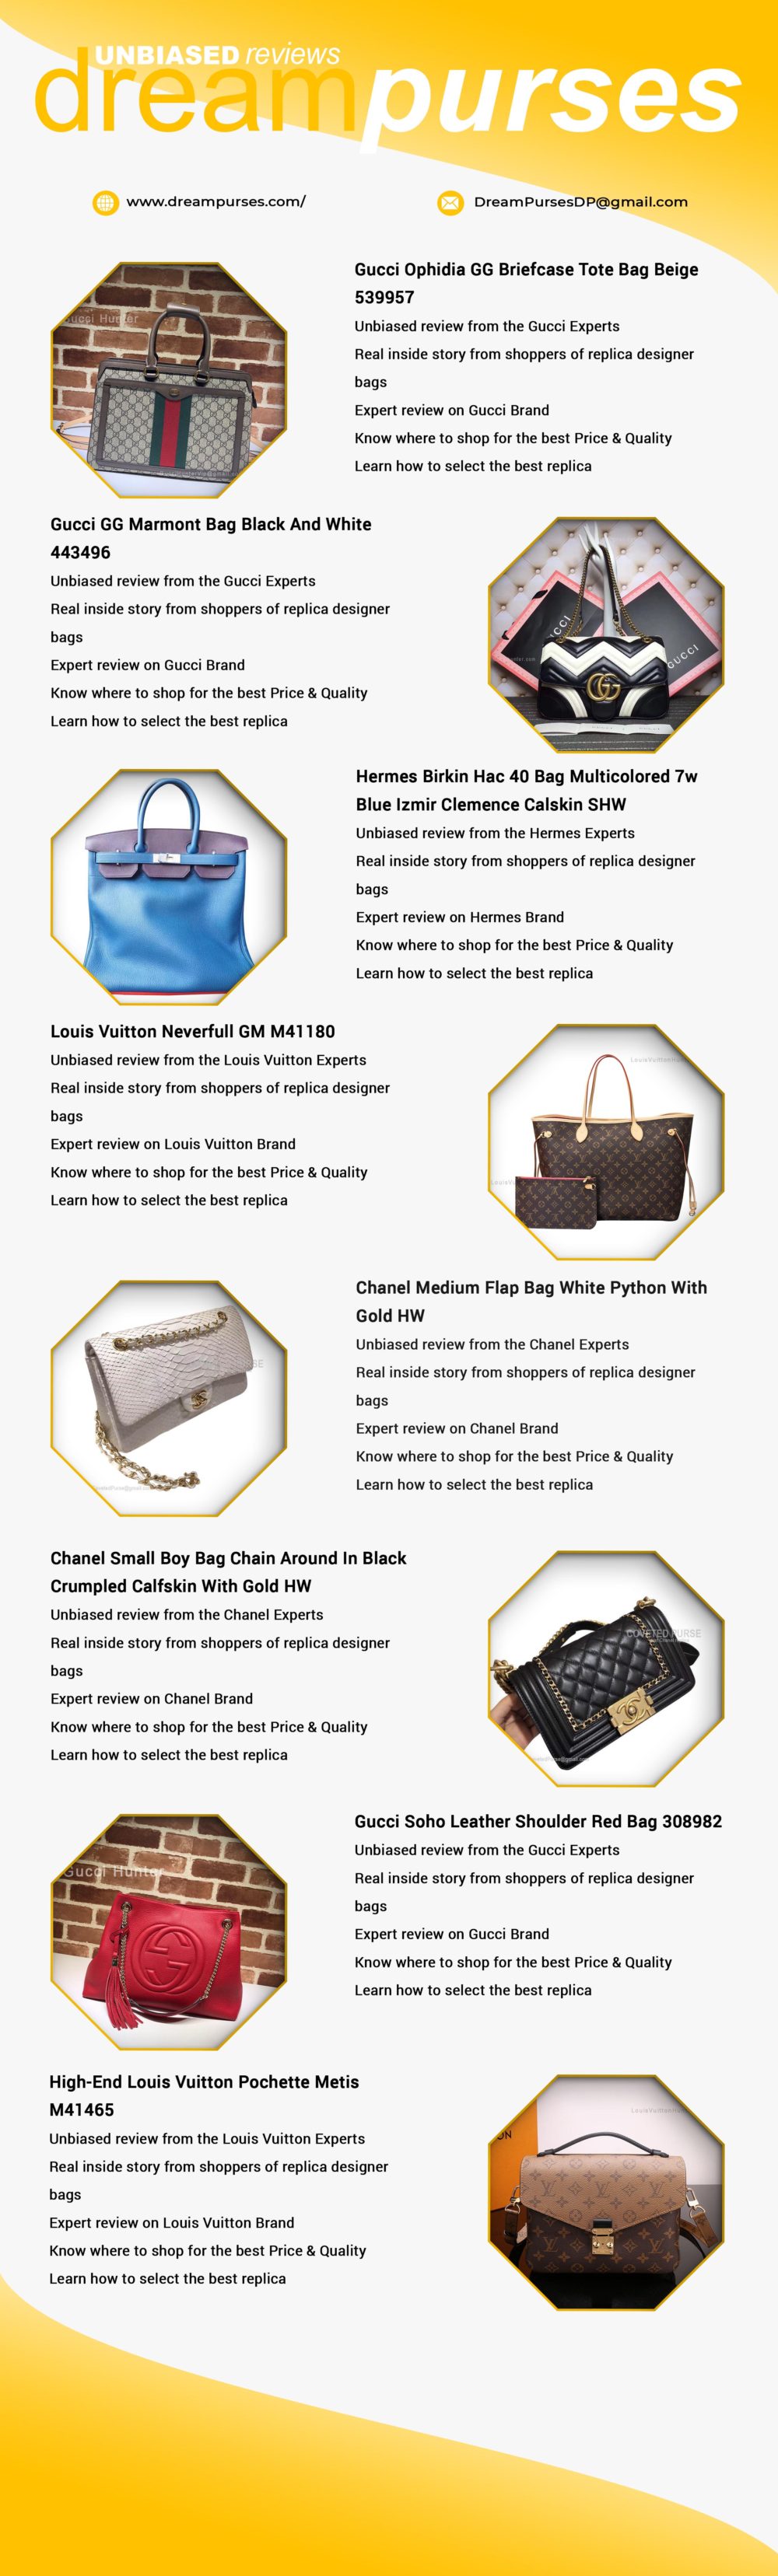 Replica Designer Handbag Reviews and Shopping - DreamPurses